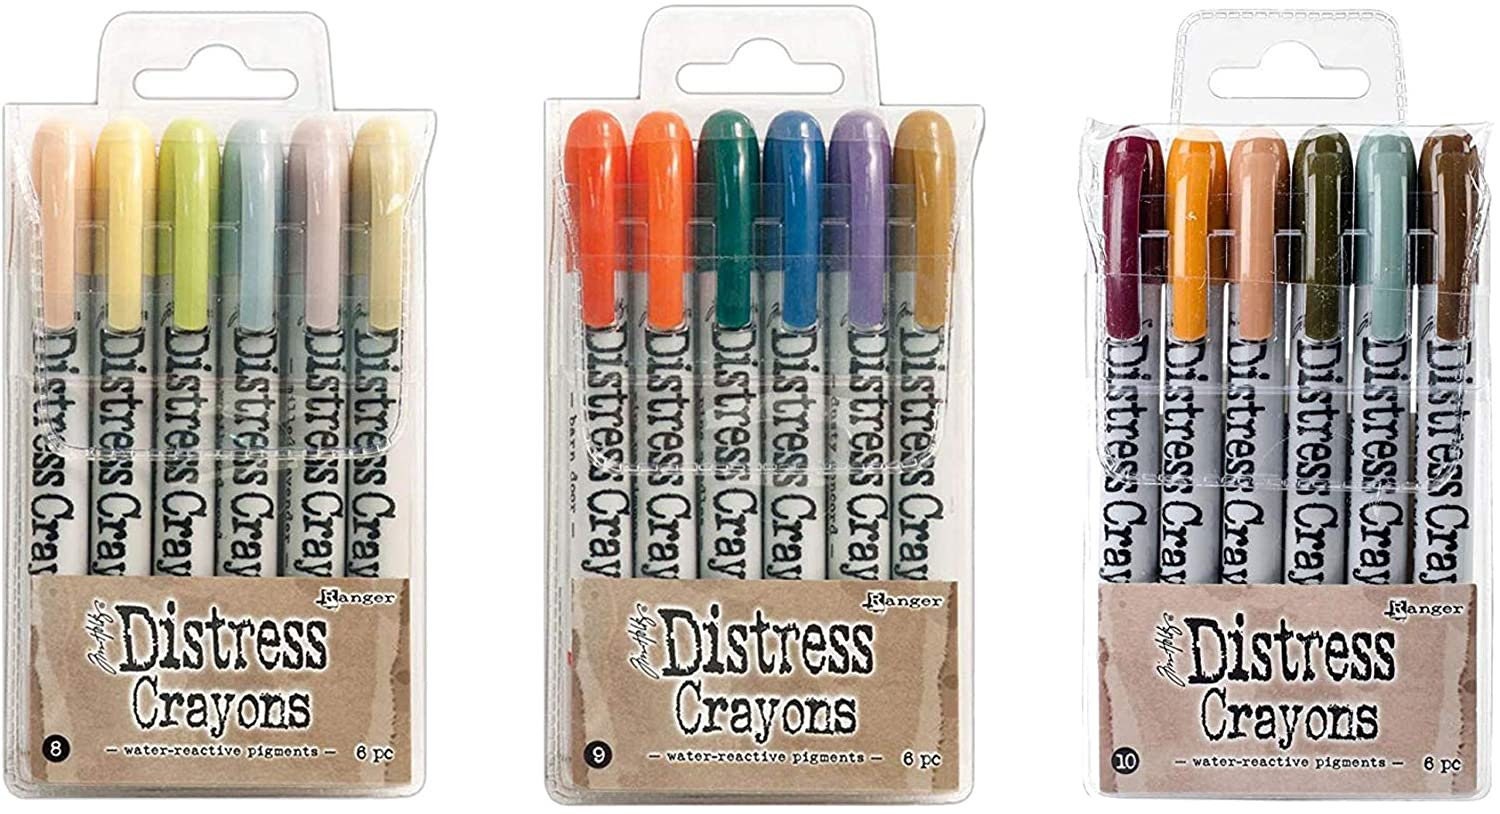 Ranger Ink Tim Holtz Bundle of 60 Distress Crayons | All 10 Sets | Set 1, 2, 3, 4, 5, 6, 7, 8, 9, 10